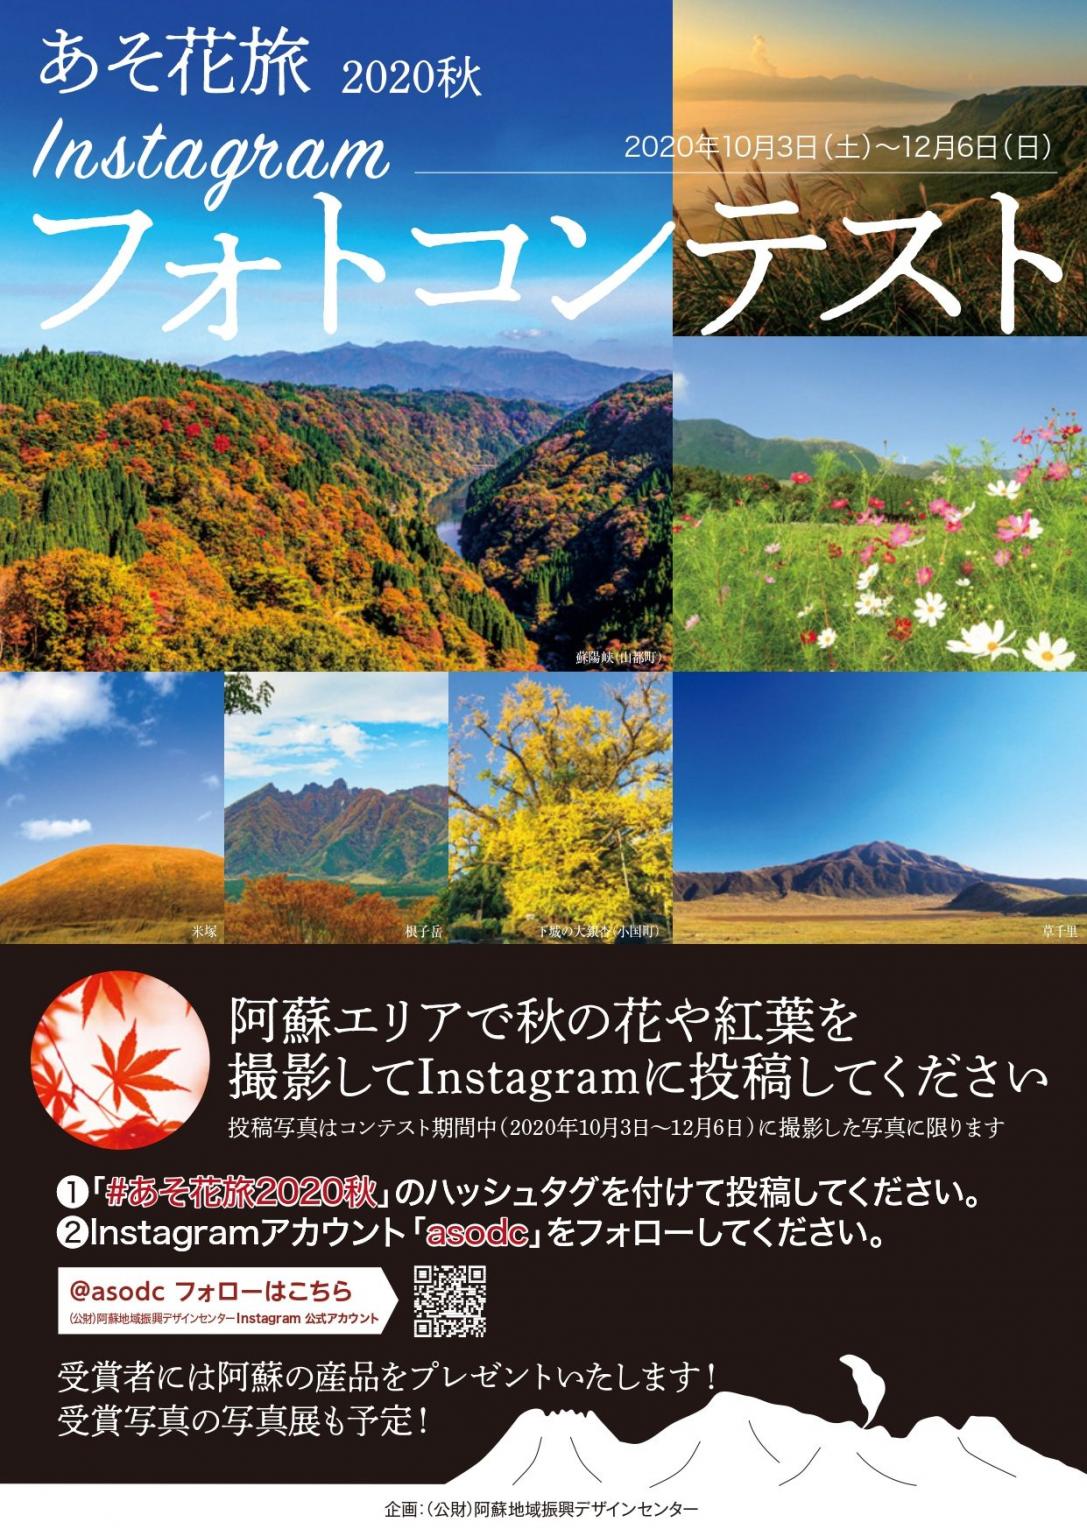 あそ花旅秋インスタグラムフォトコンテスト イベント 公式 熊本県観光サイト もっと もーっと くまもっと